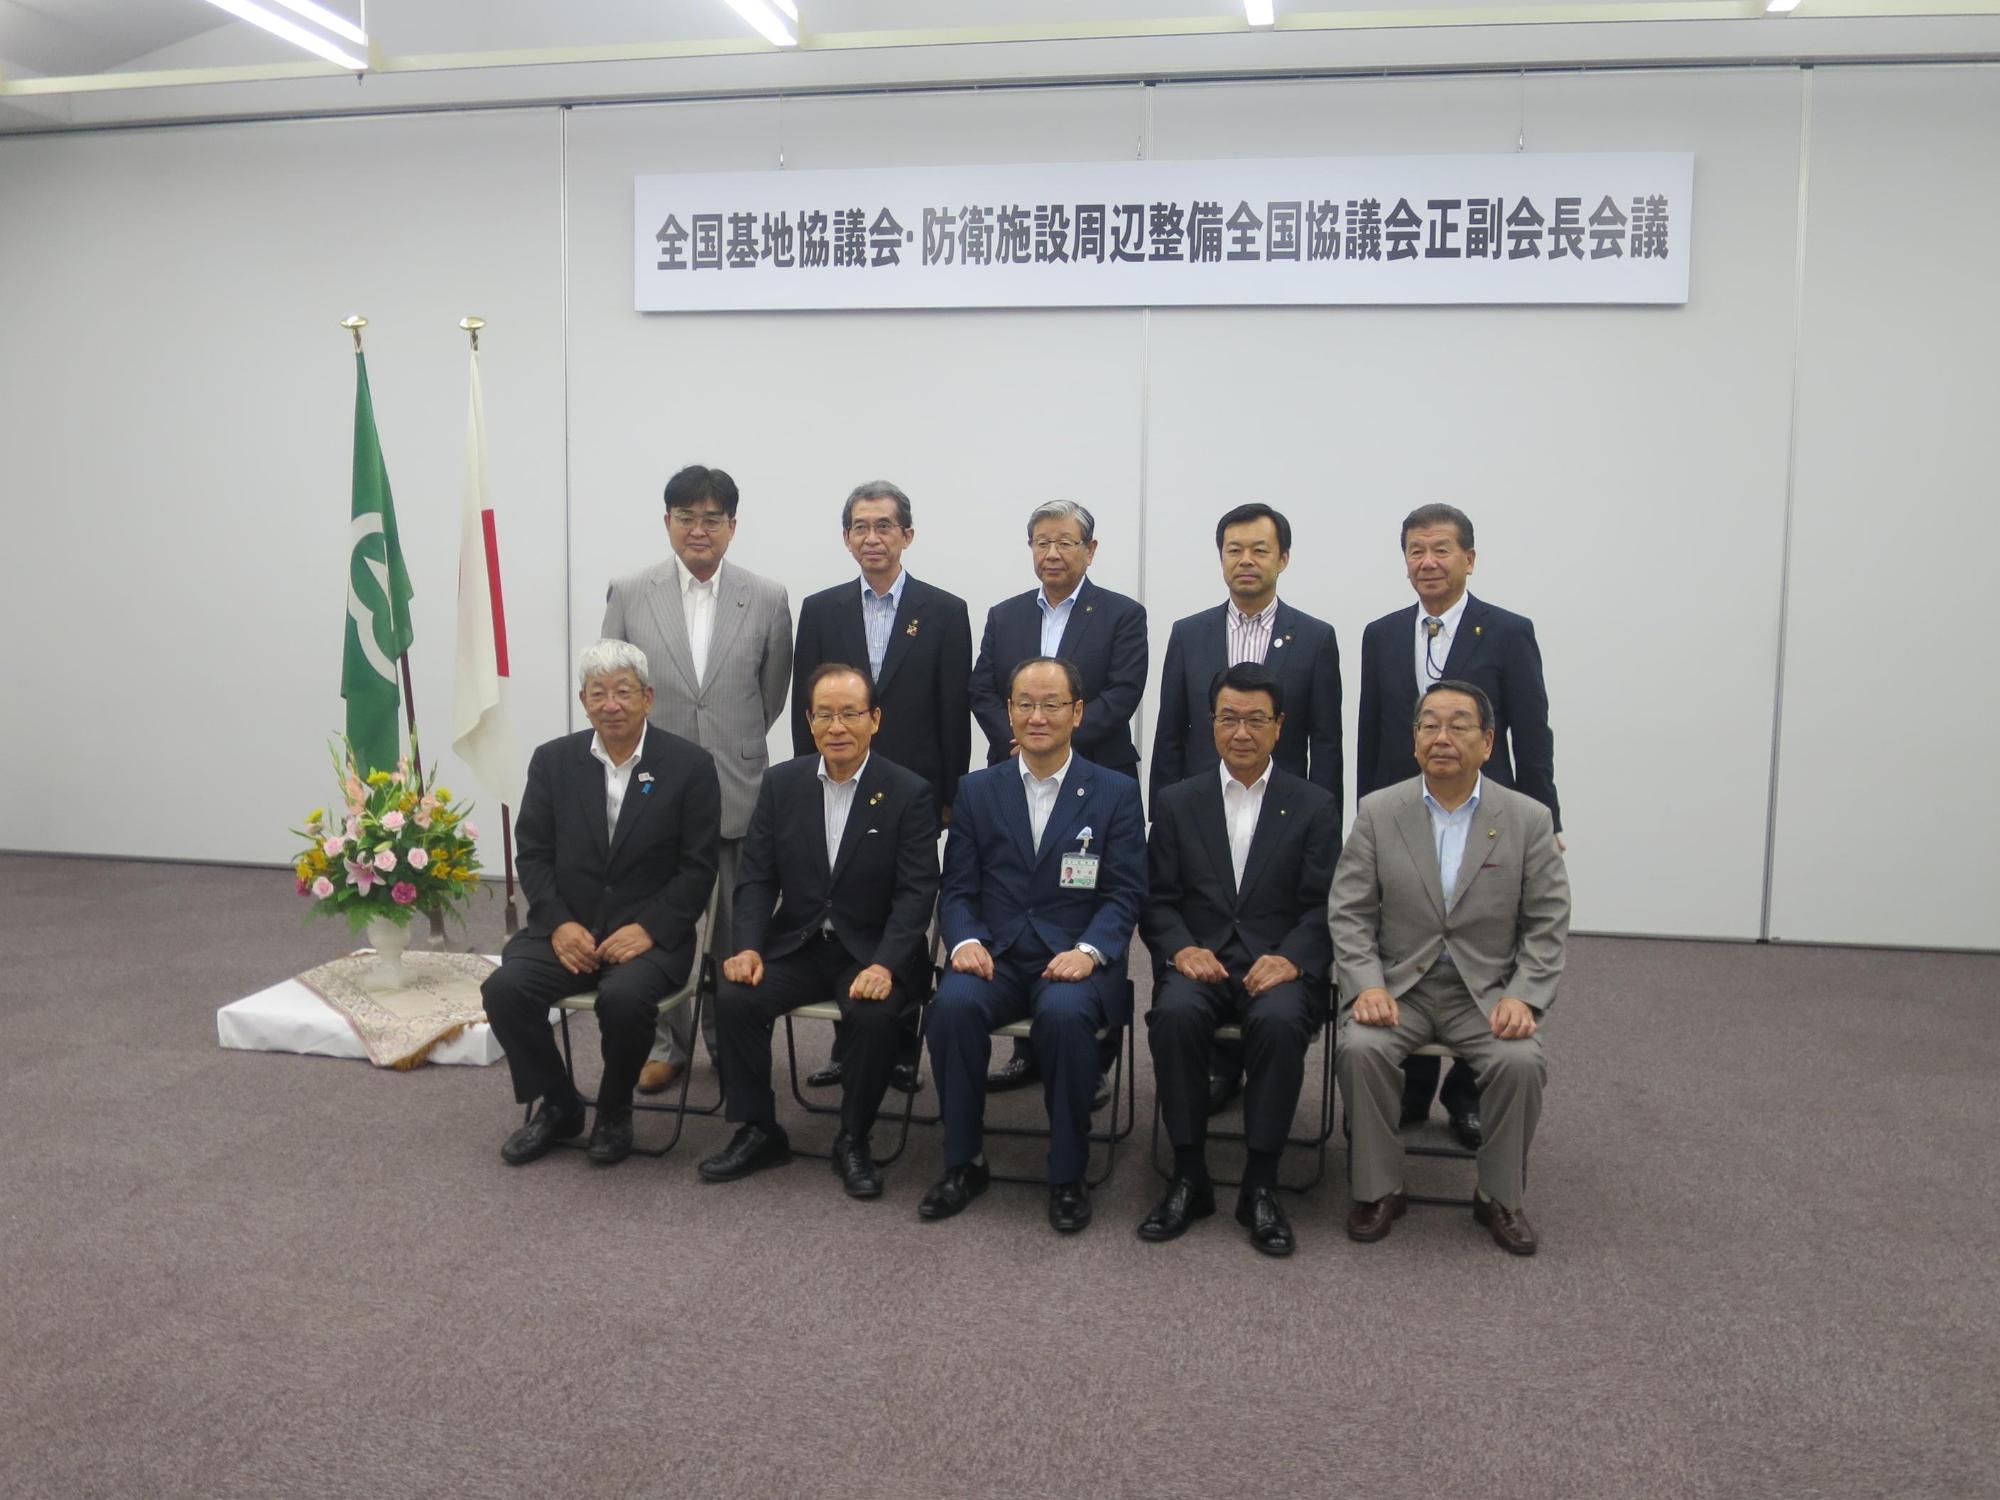 会議名のパネルの前に並ぶ原田市長と会議出席者らの写真